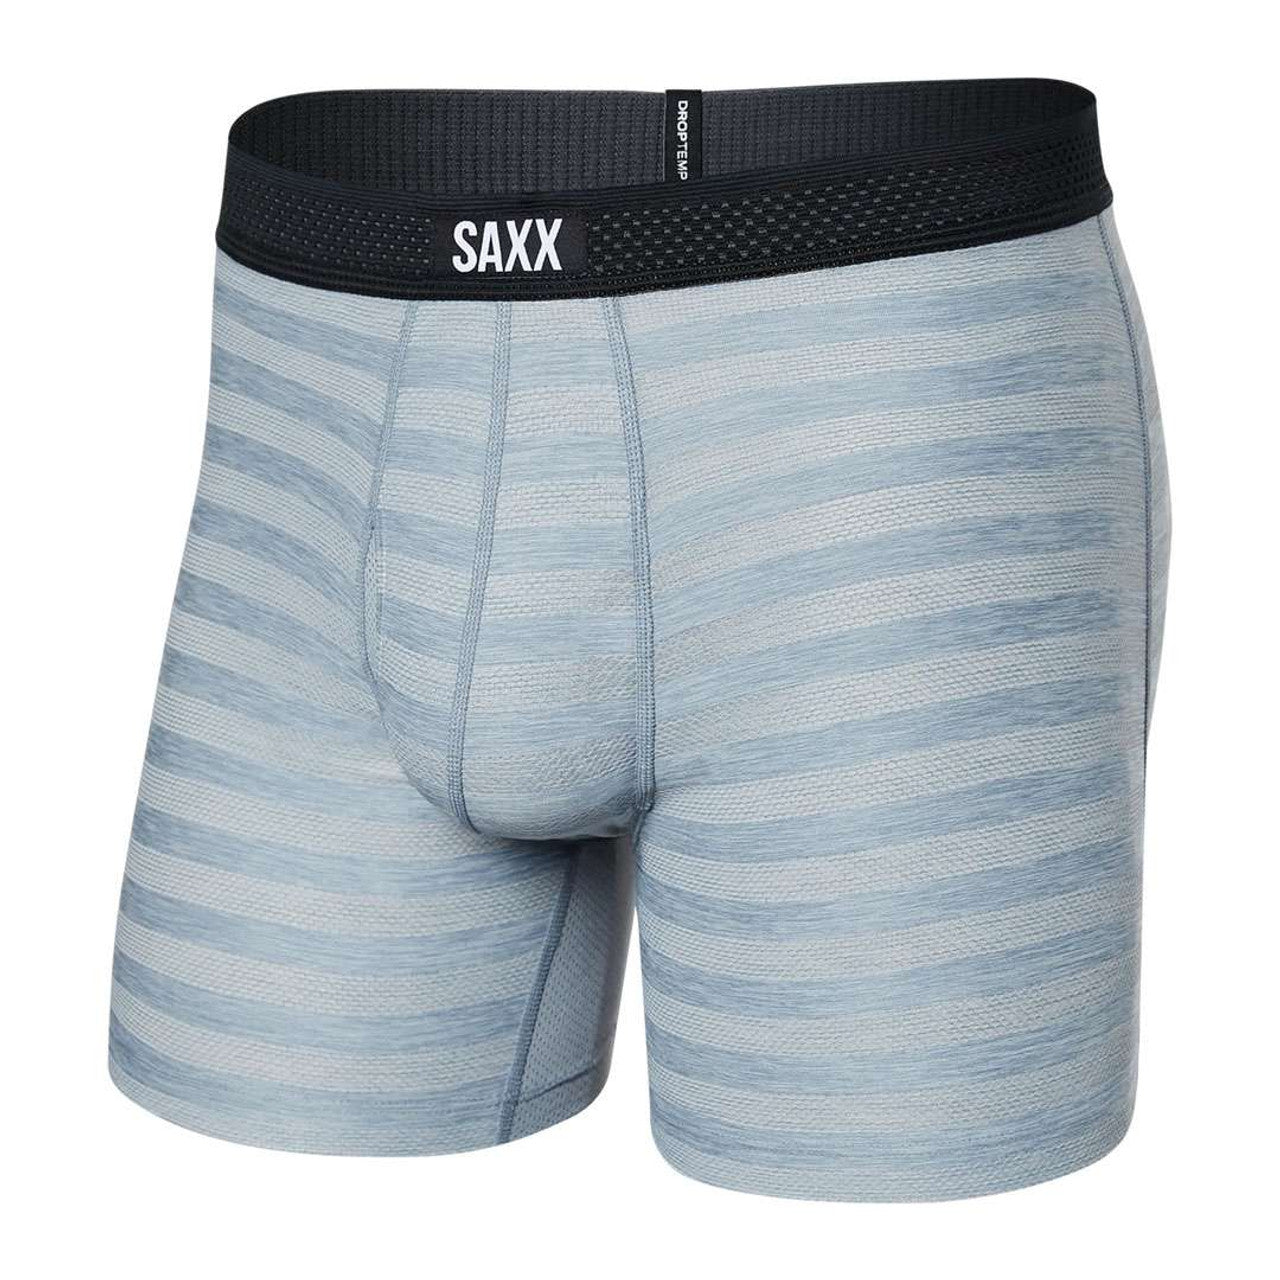 Men's SAXX Droptemp Cooling Cotton Boxer Briefs